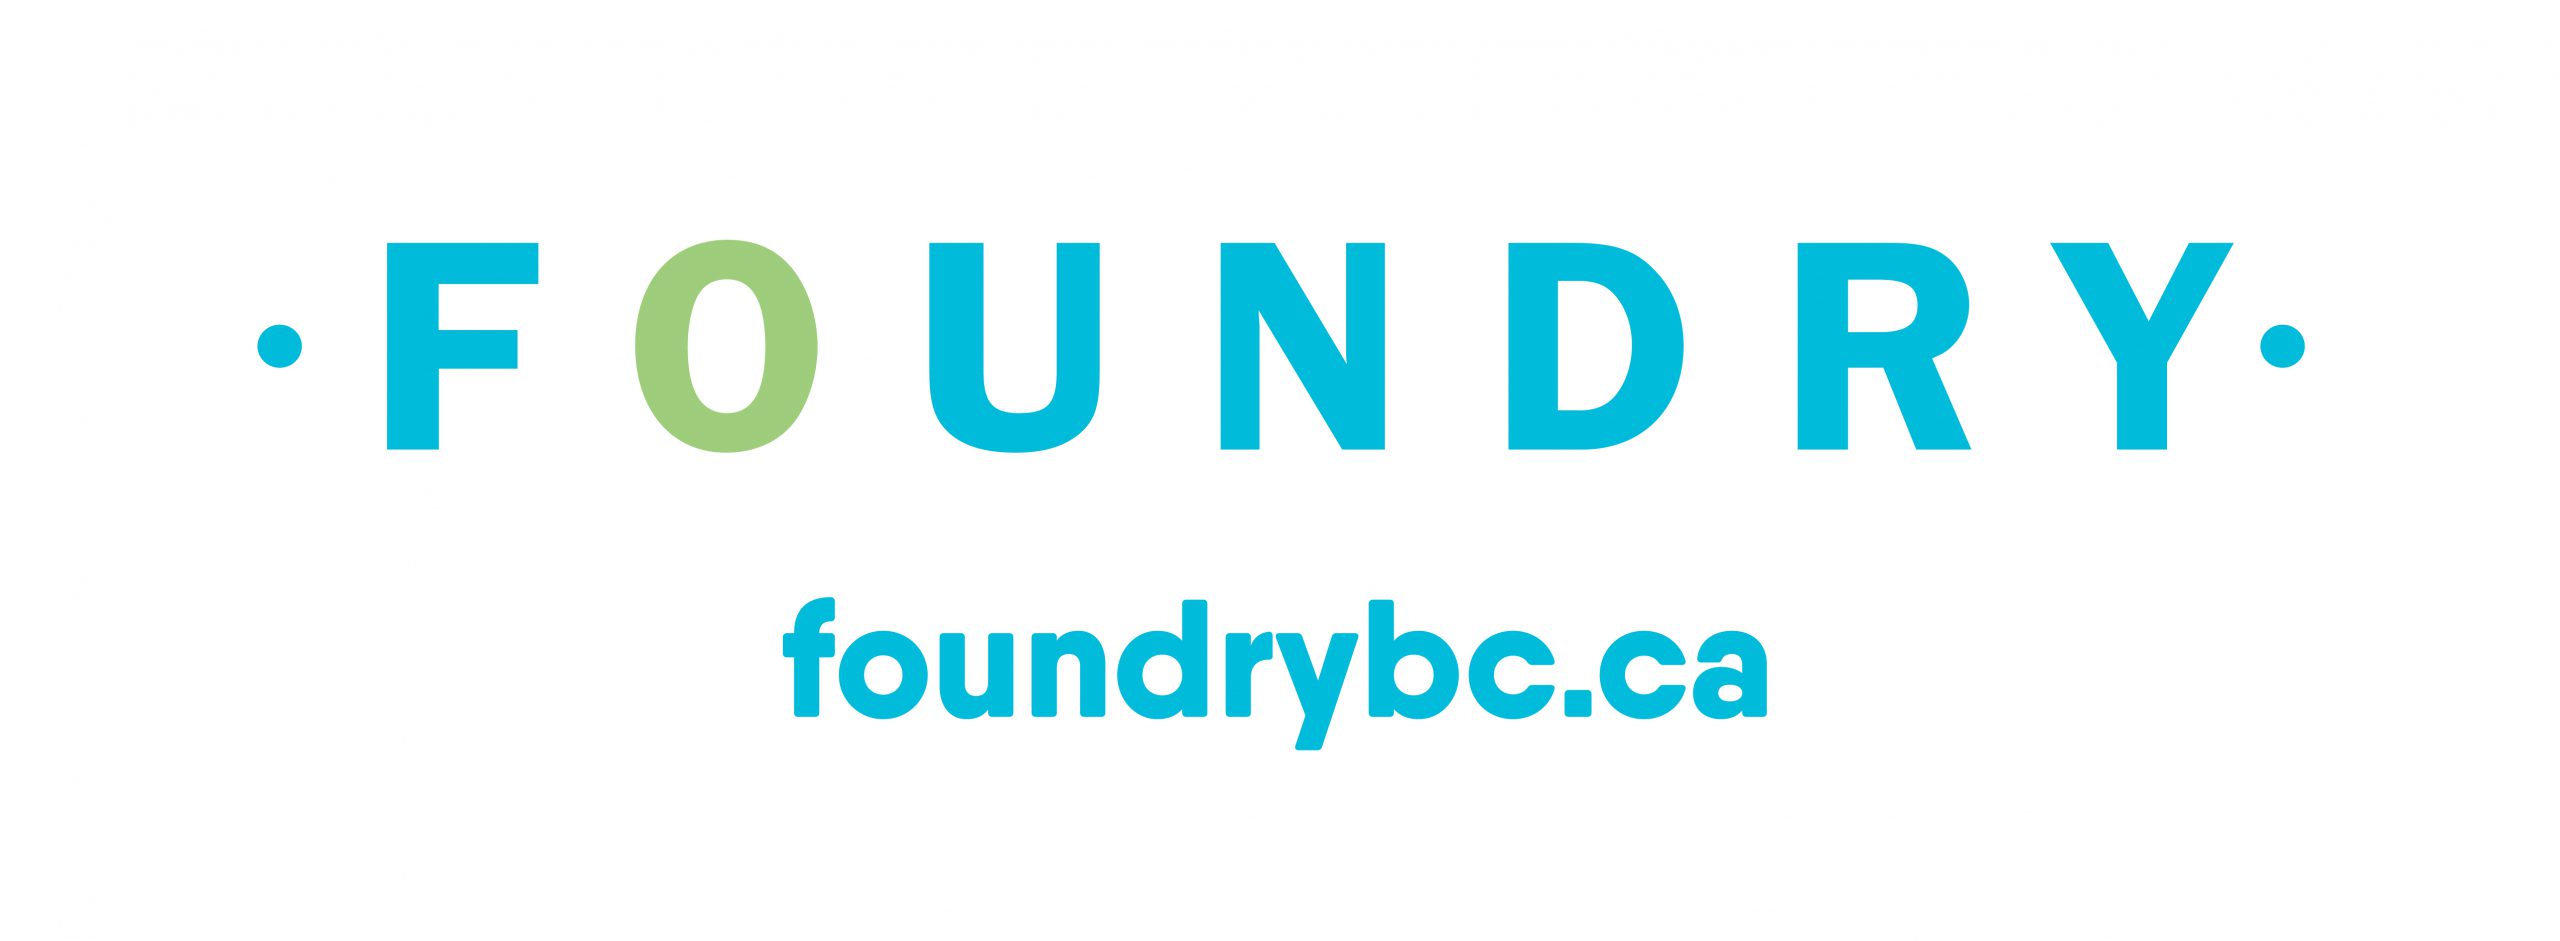 Foundry logos-RGB-website